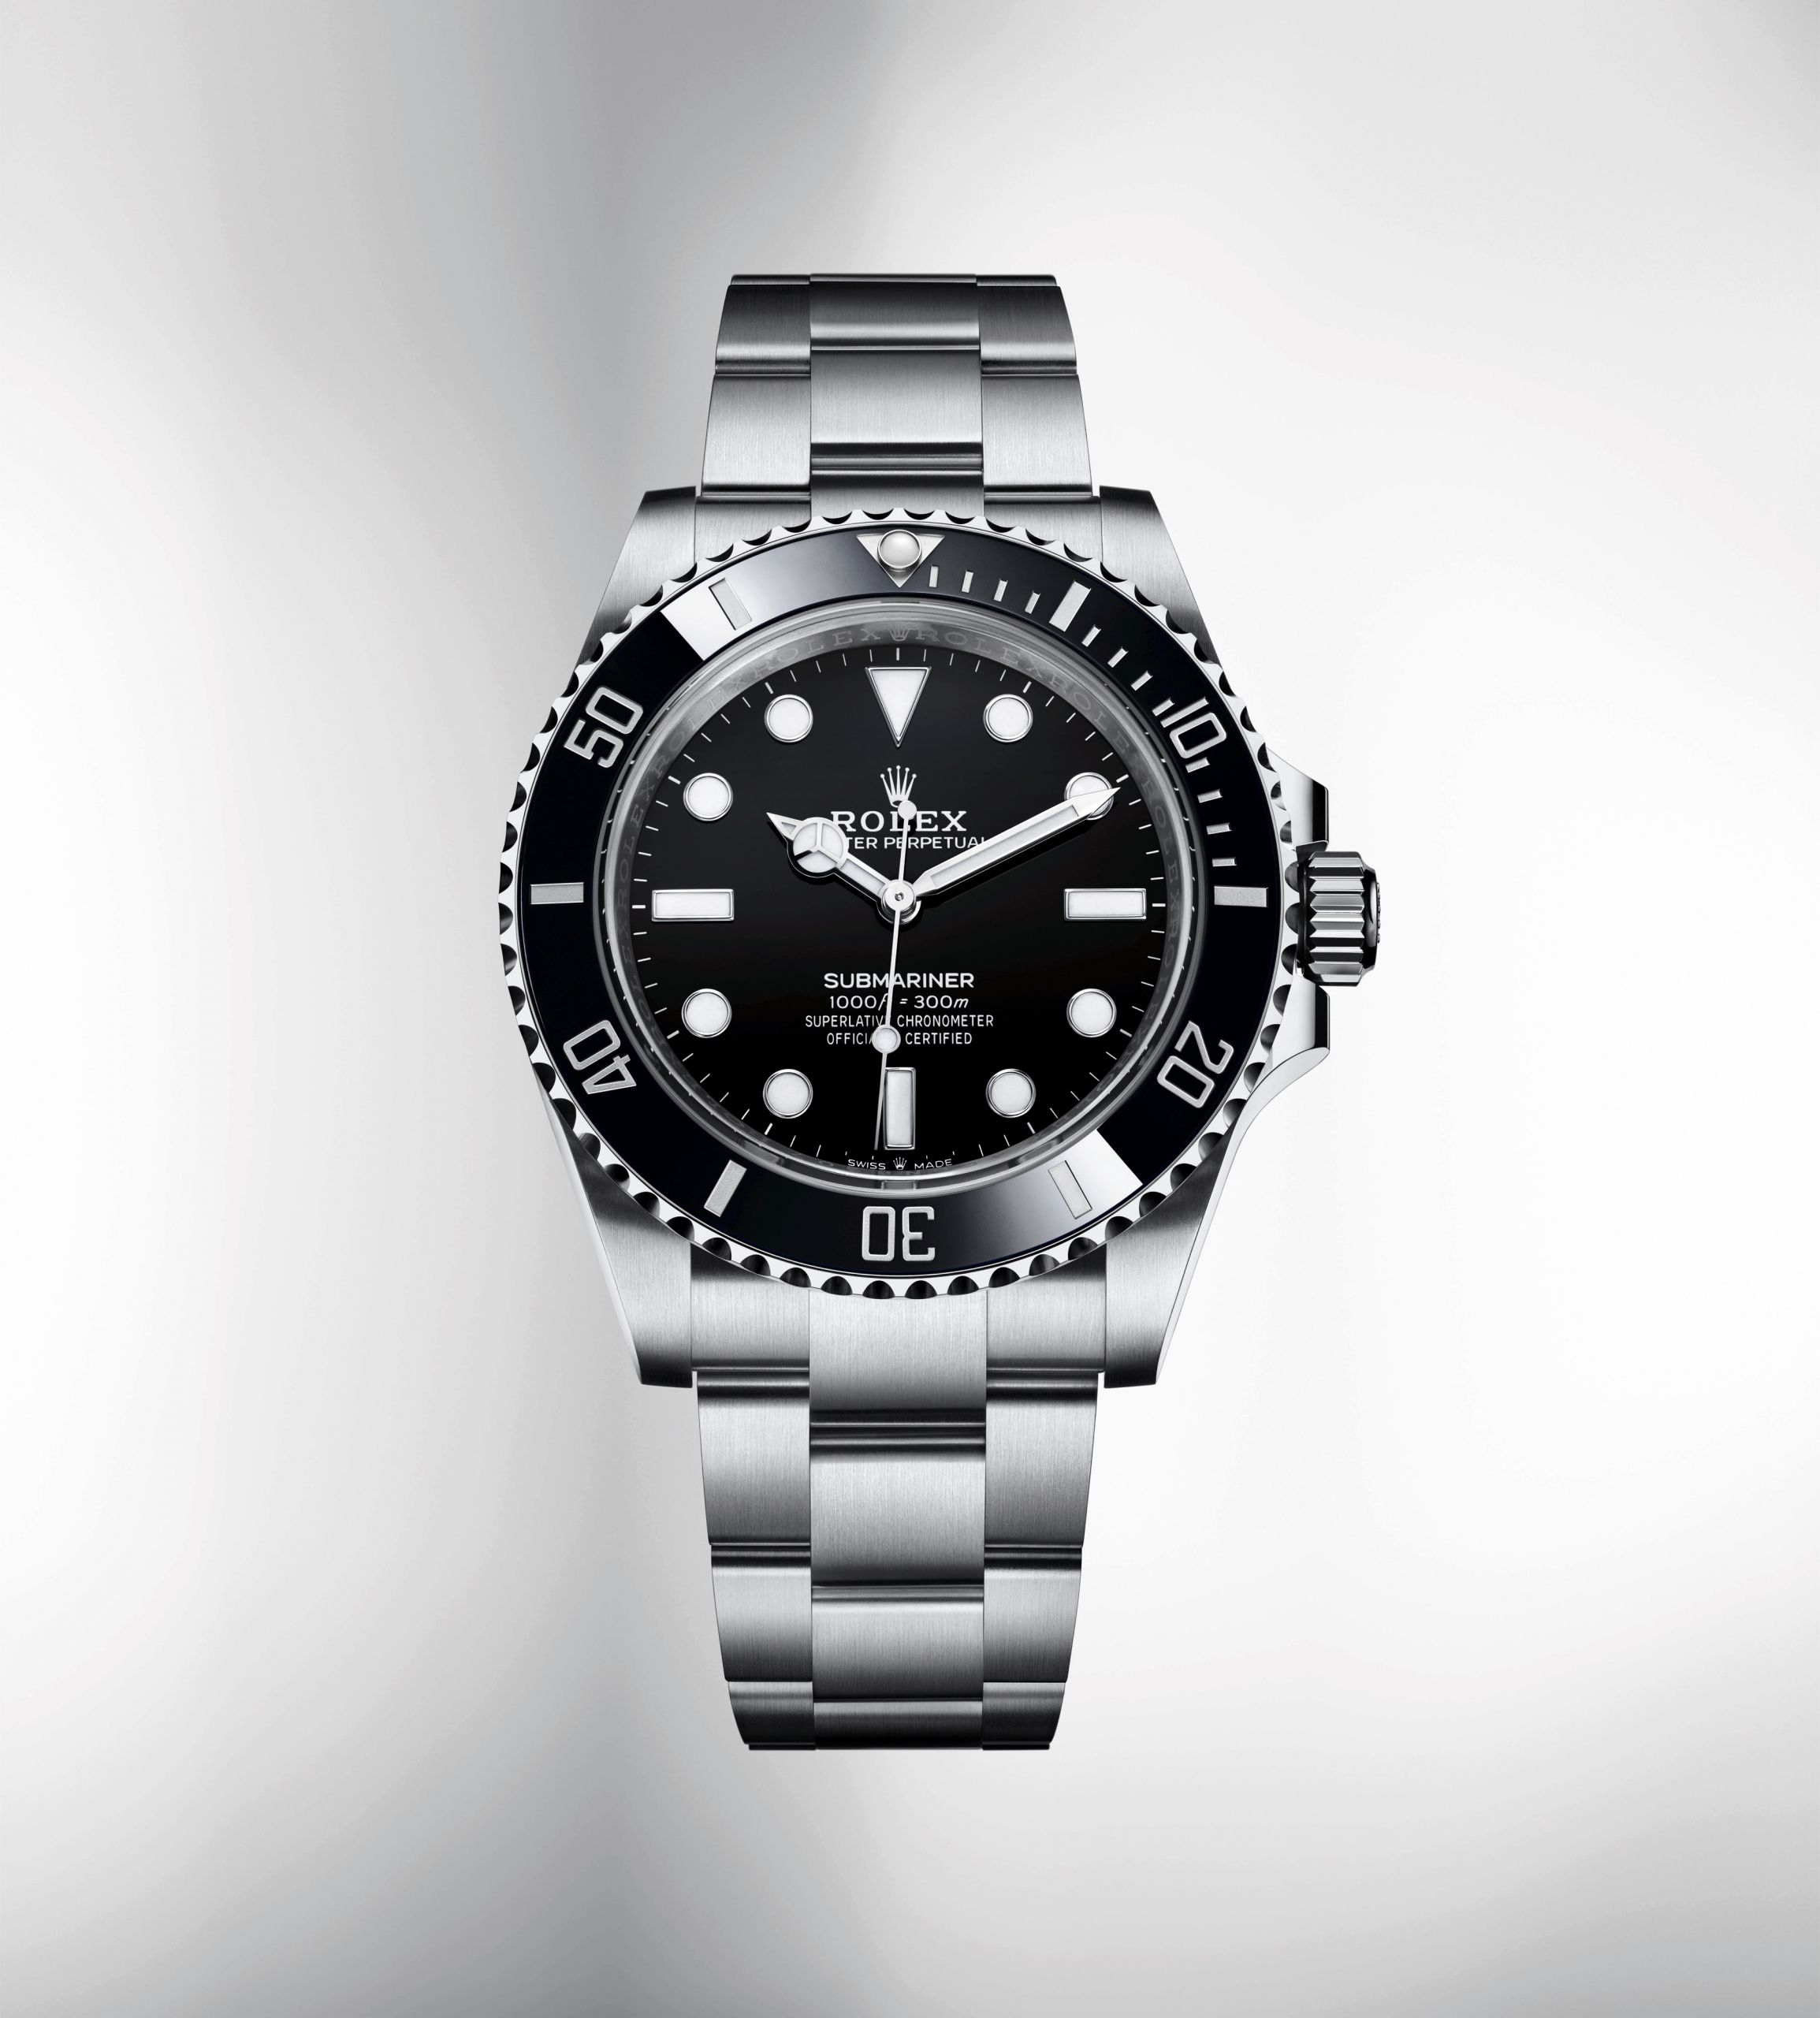 The Rolex Submariner Date